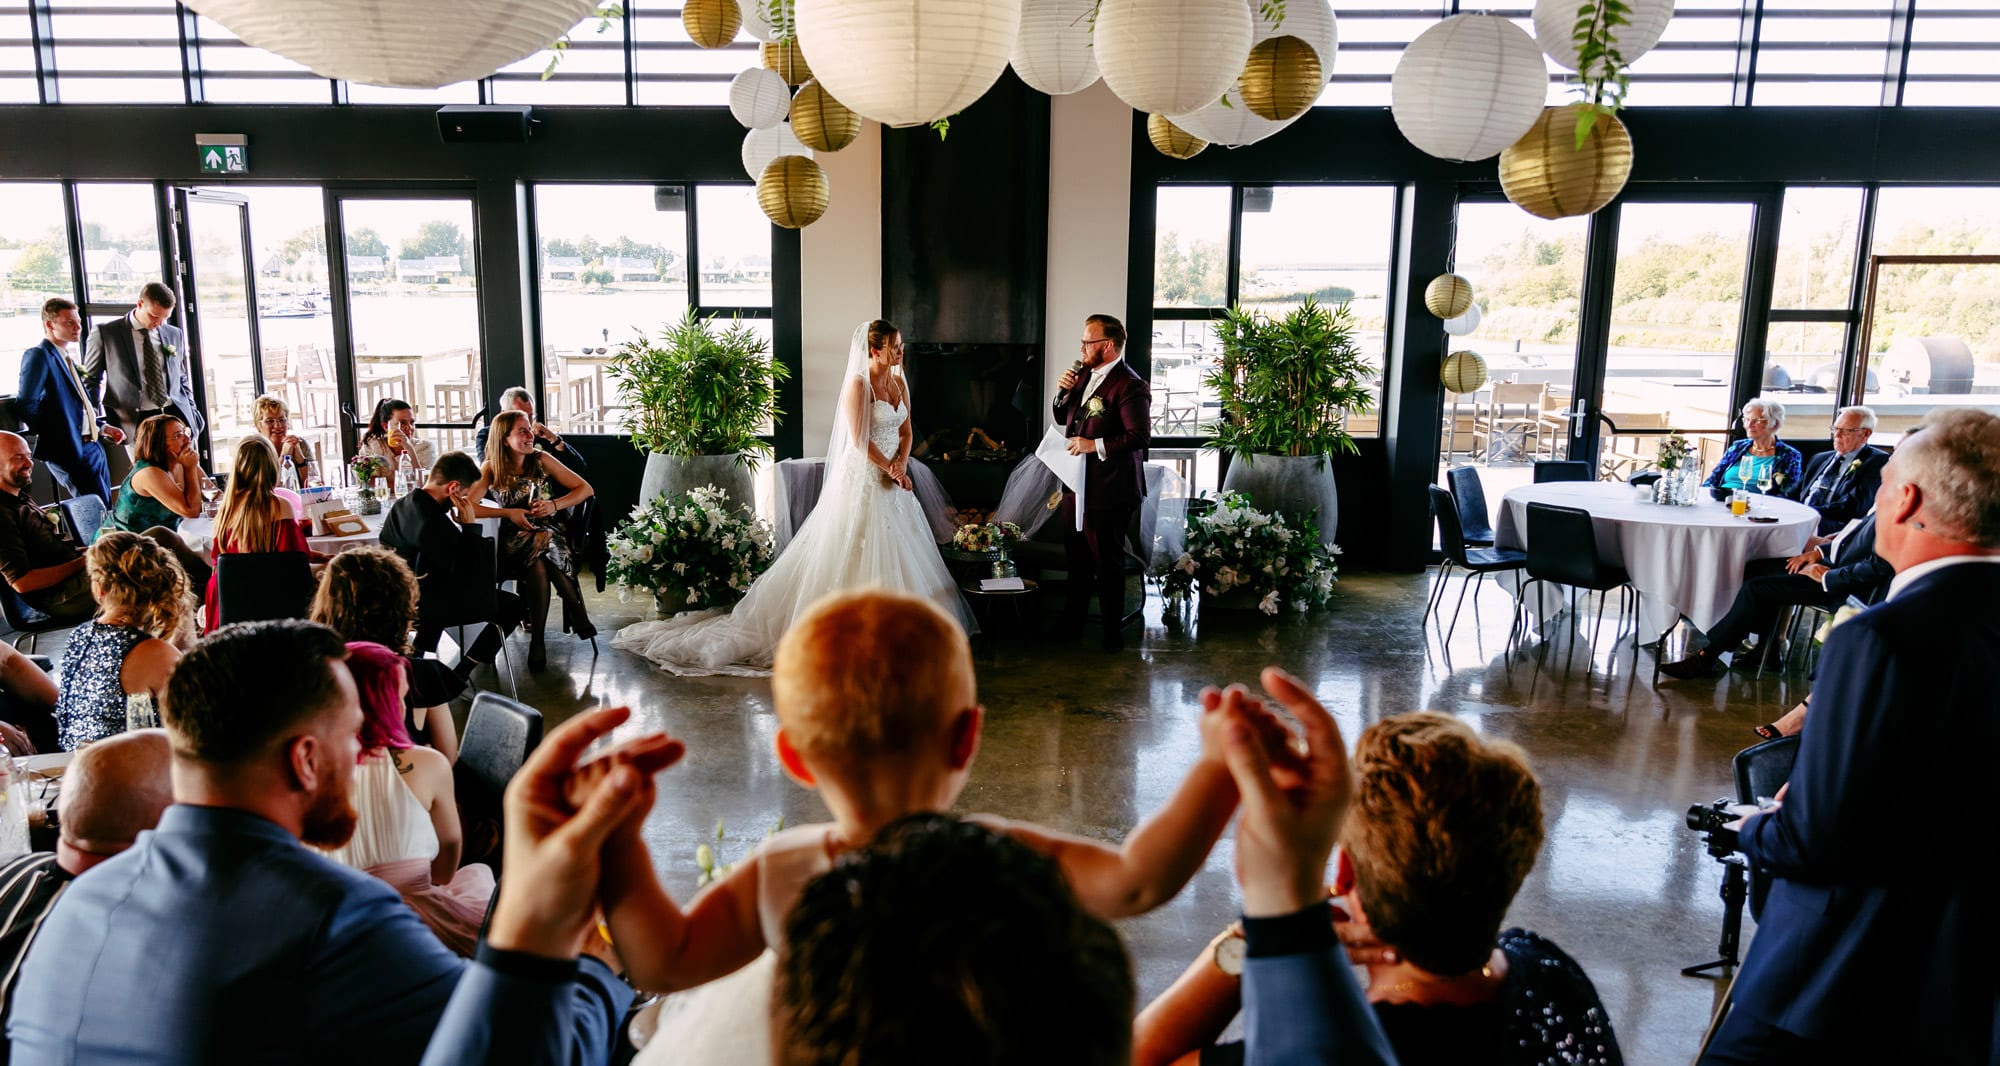 De trouwgeloftes wisselen oprechte geloften uit voordat ze als bruid en bruidegom een romantische dans delen tijdens hun huwelijksceremonie.